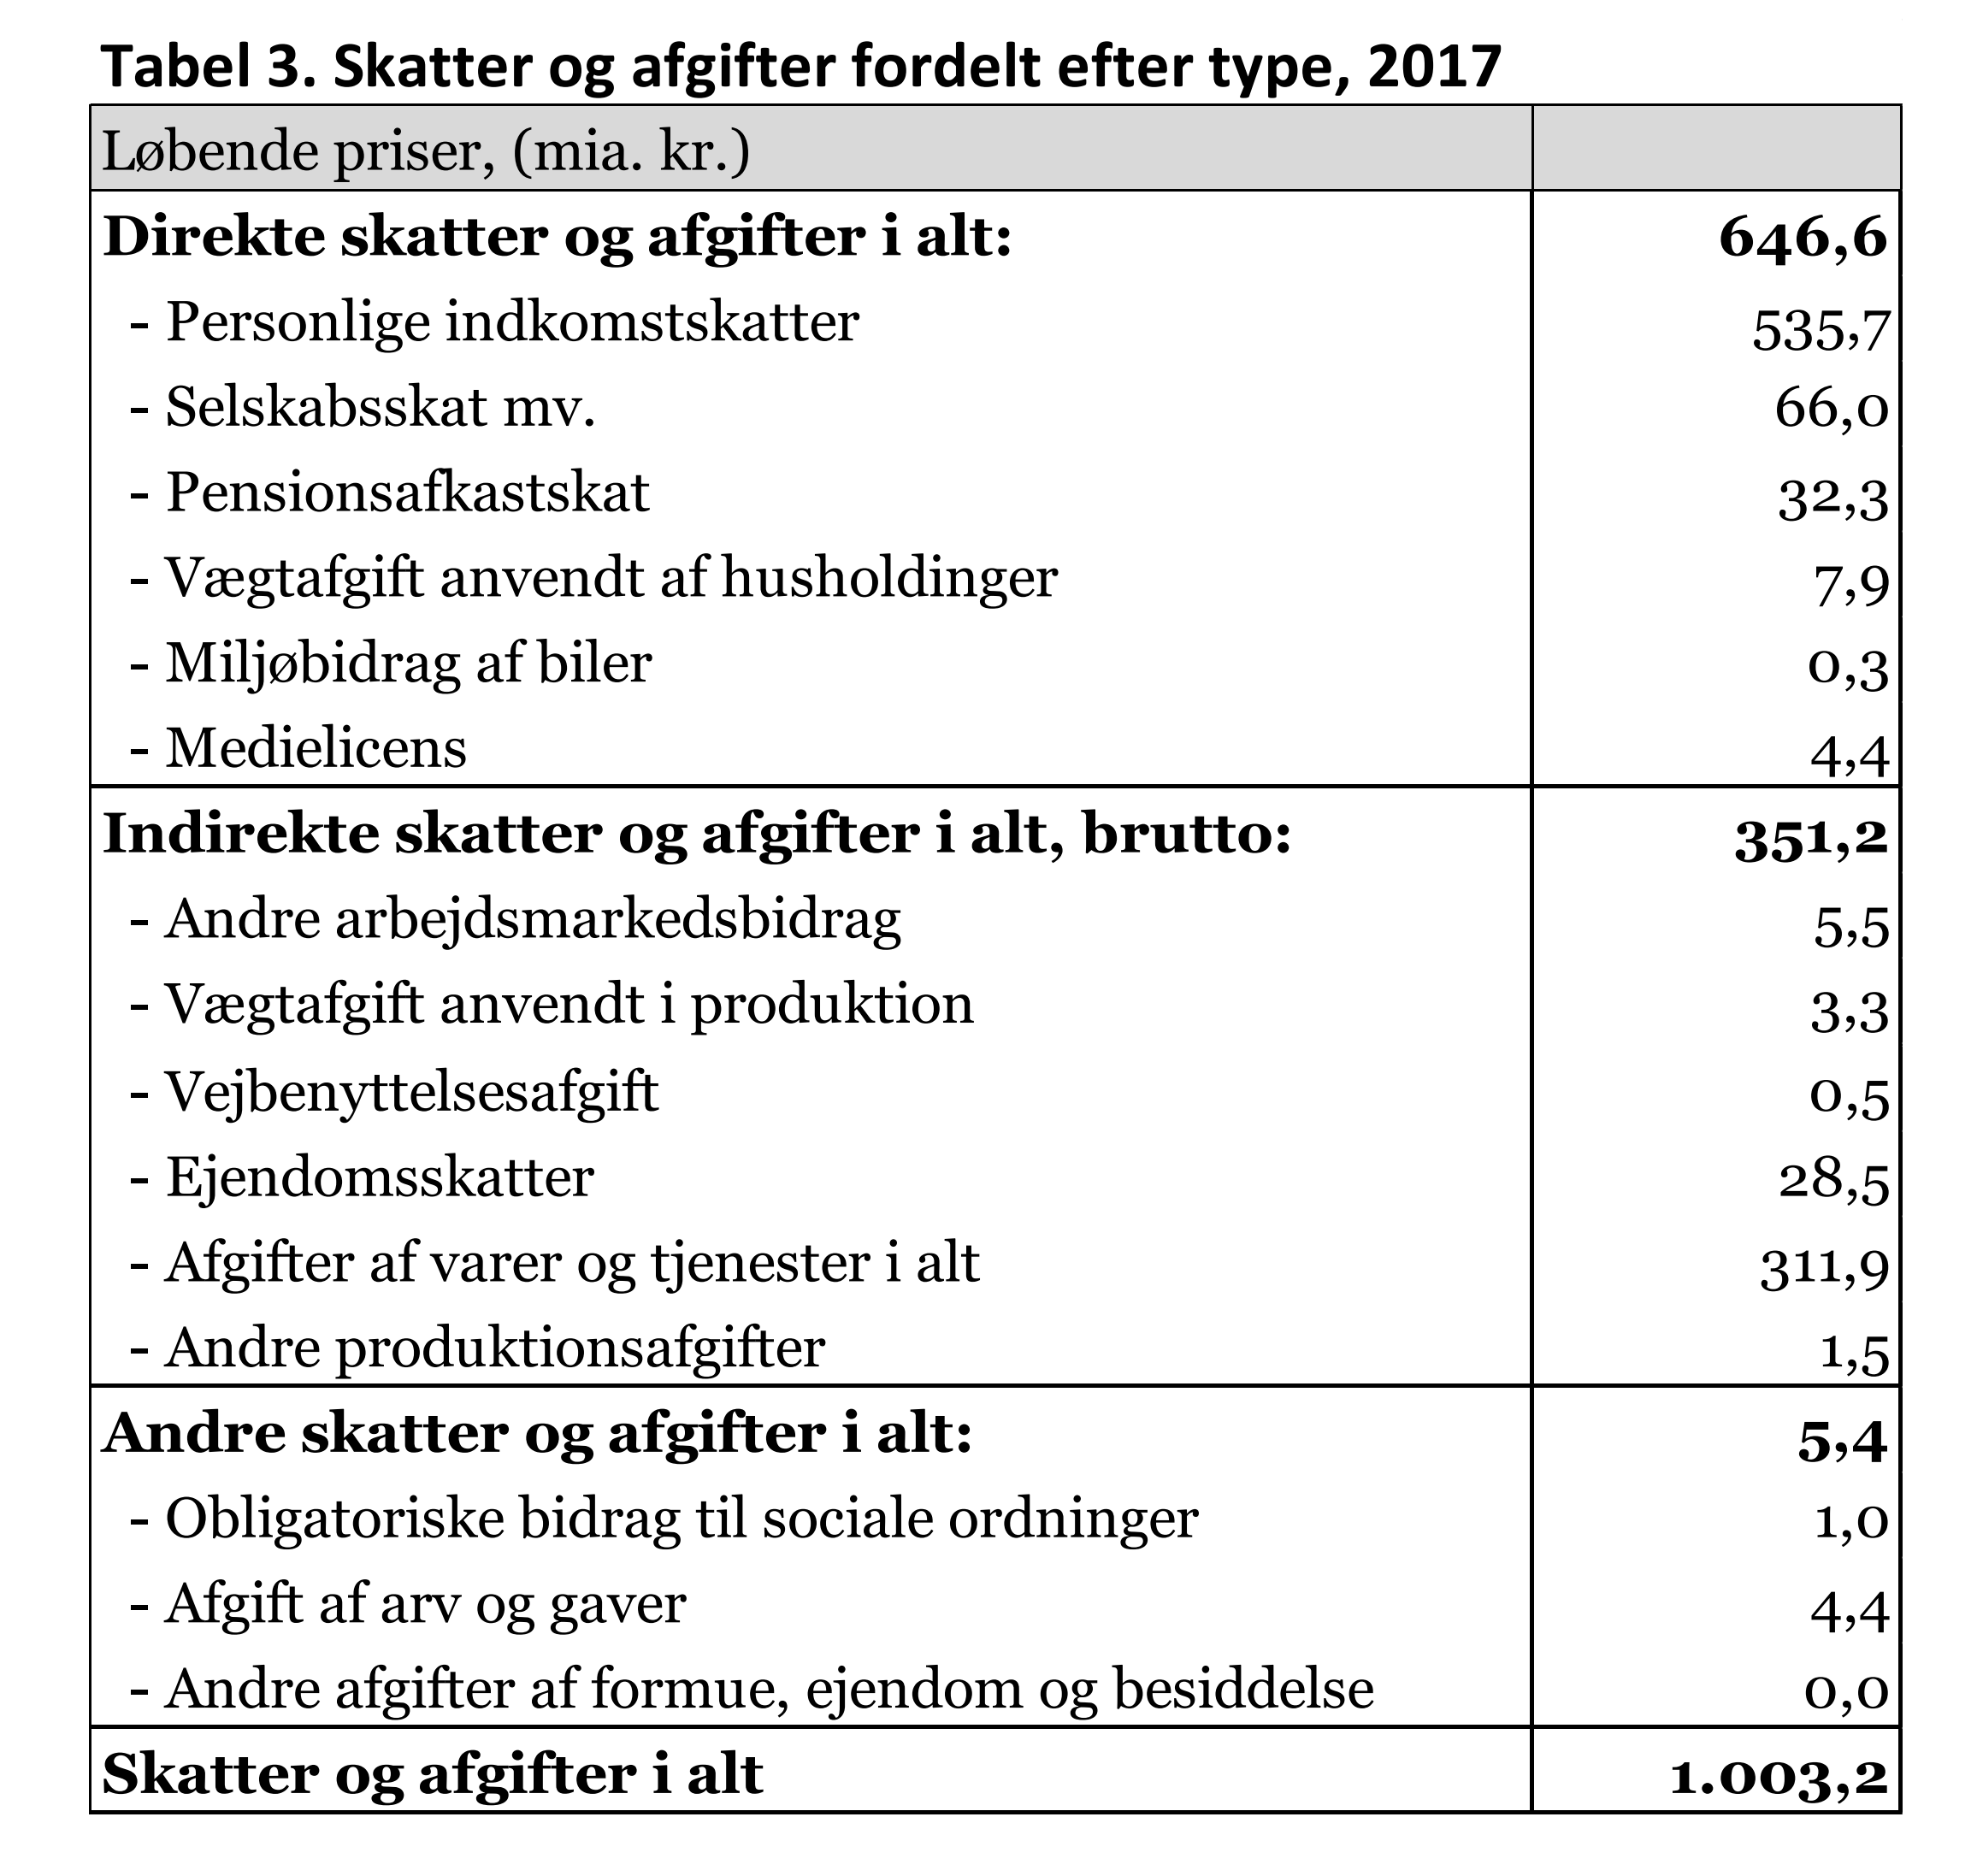 Tabel 3. Skatter og afgifter fordelt efter type, 2017